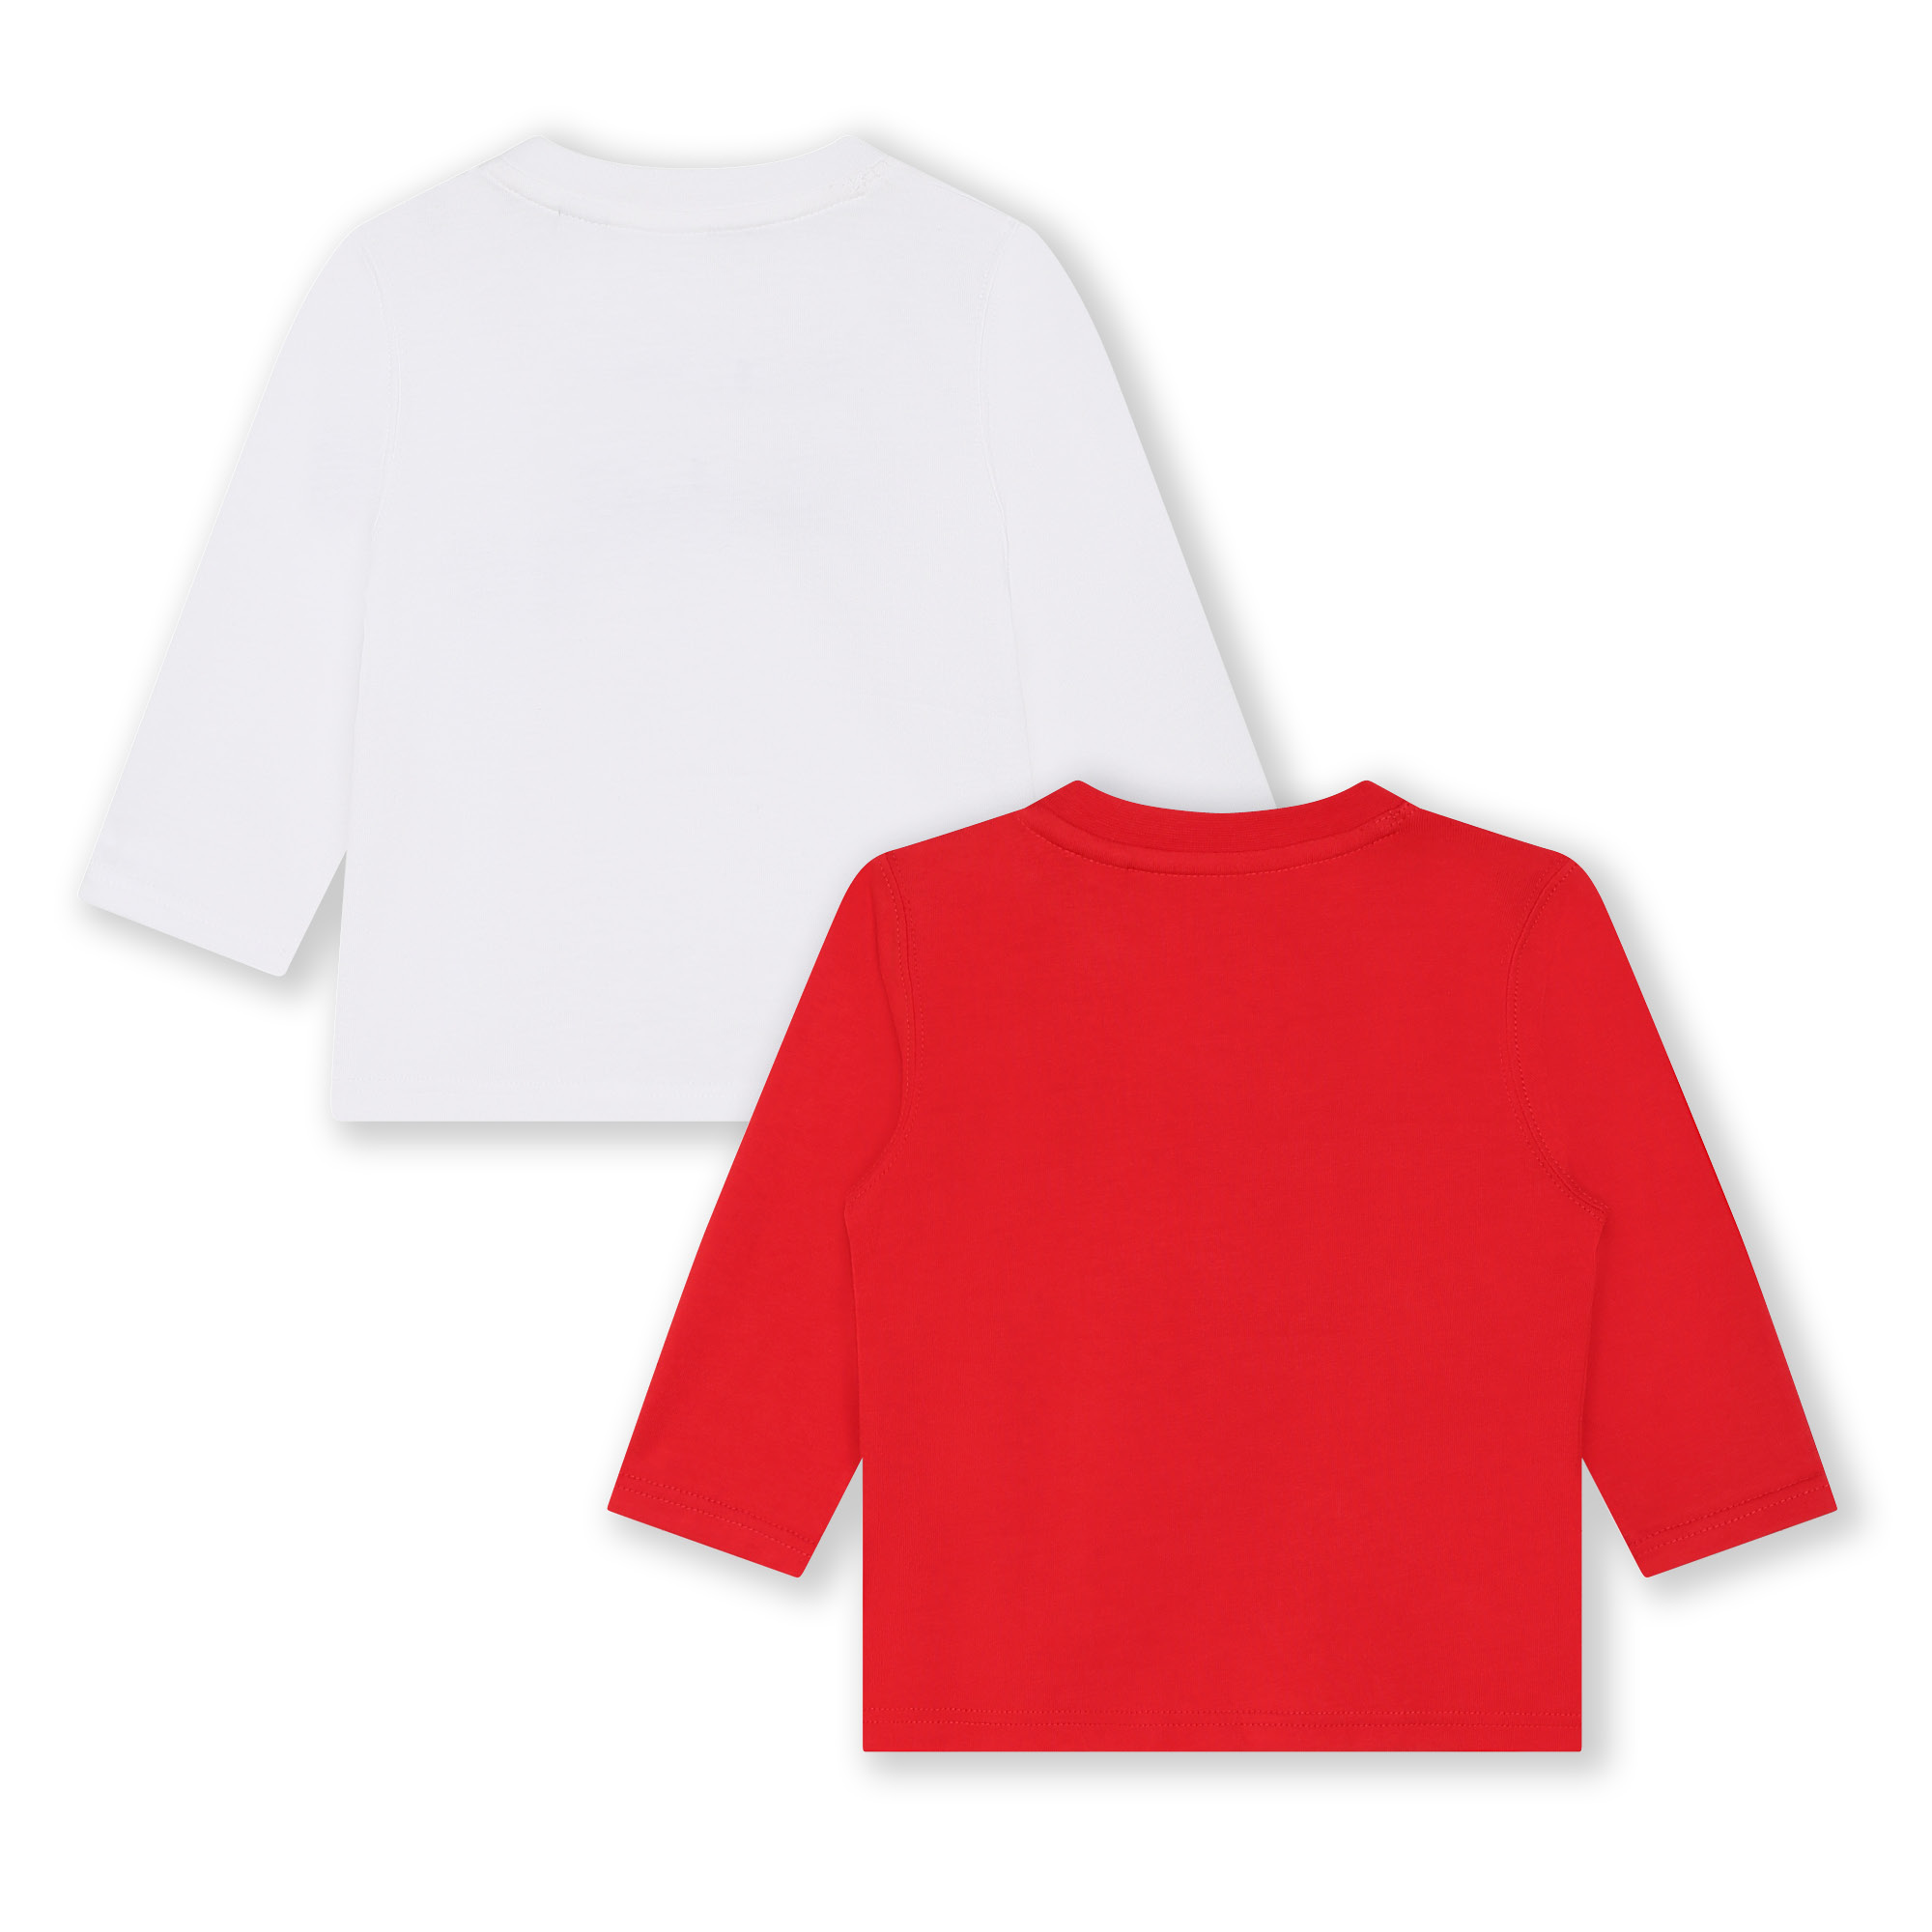 Setje van 2 T-shirts met logo TIMBERLAND Voor